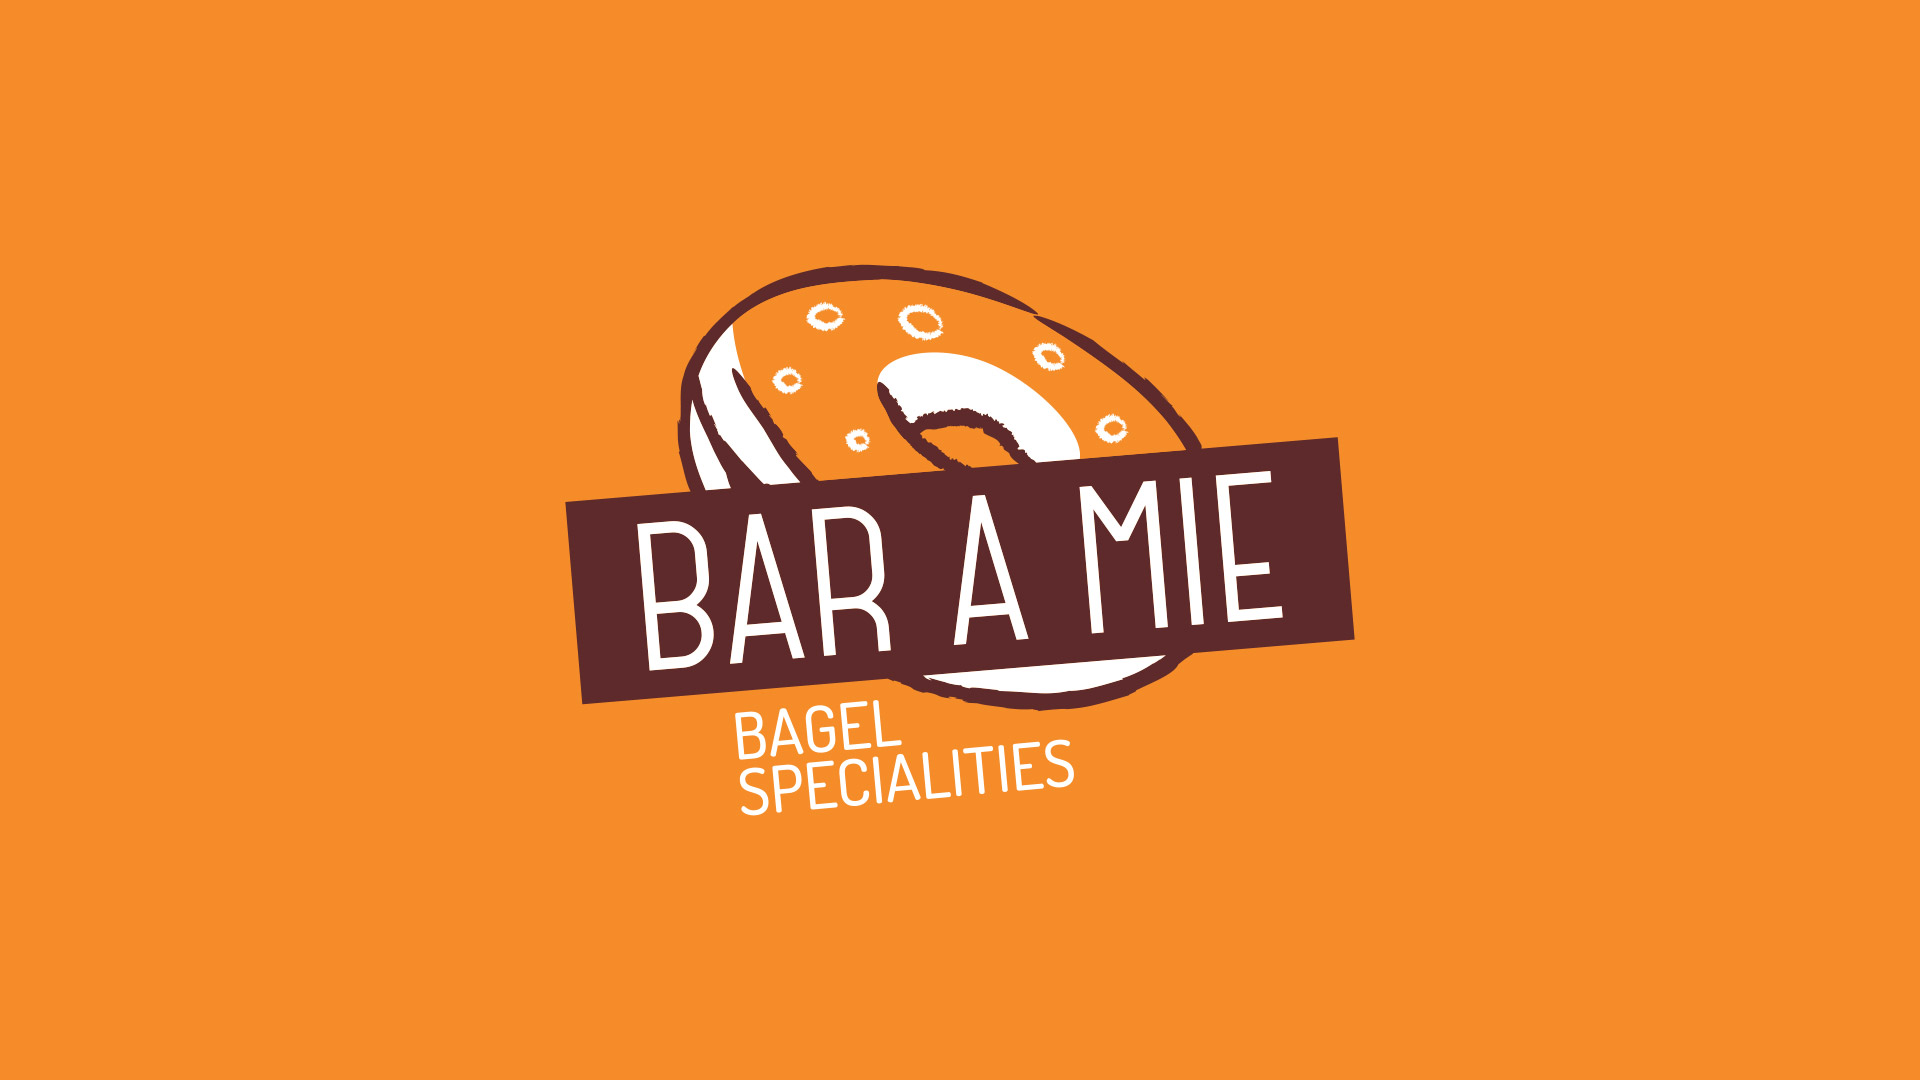 baramie_logo